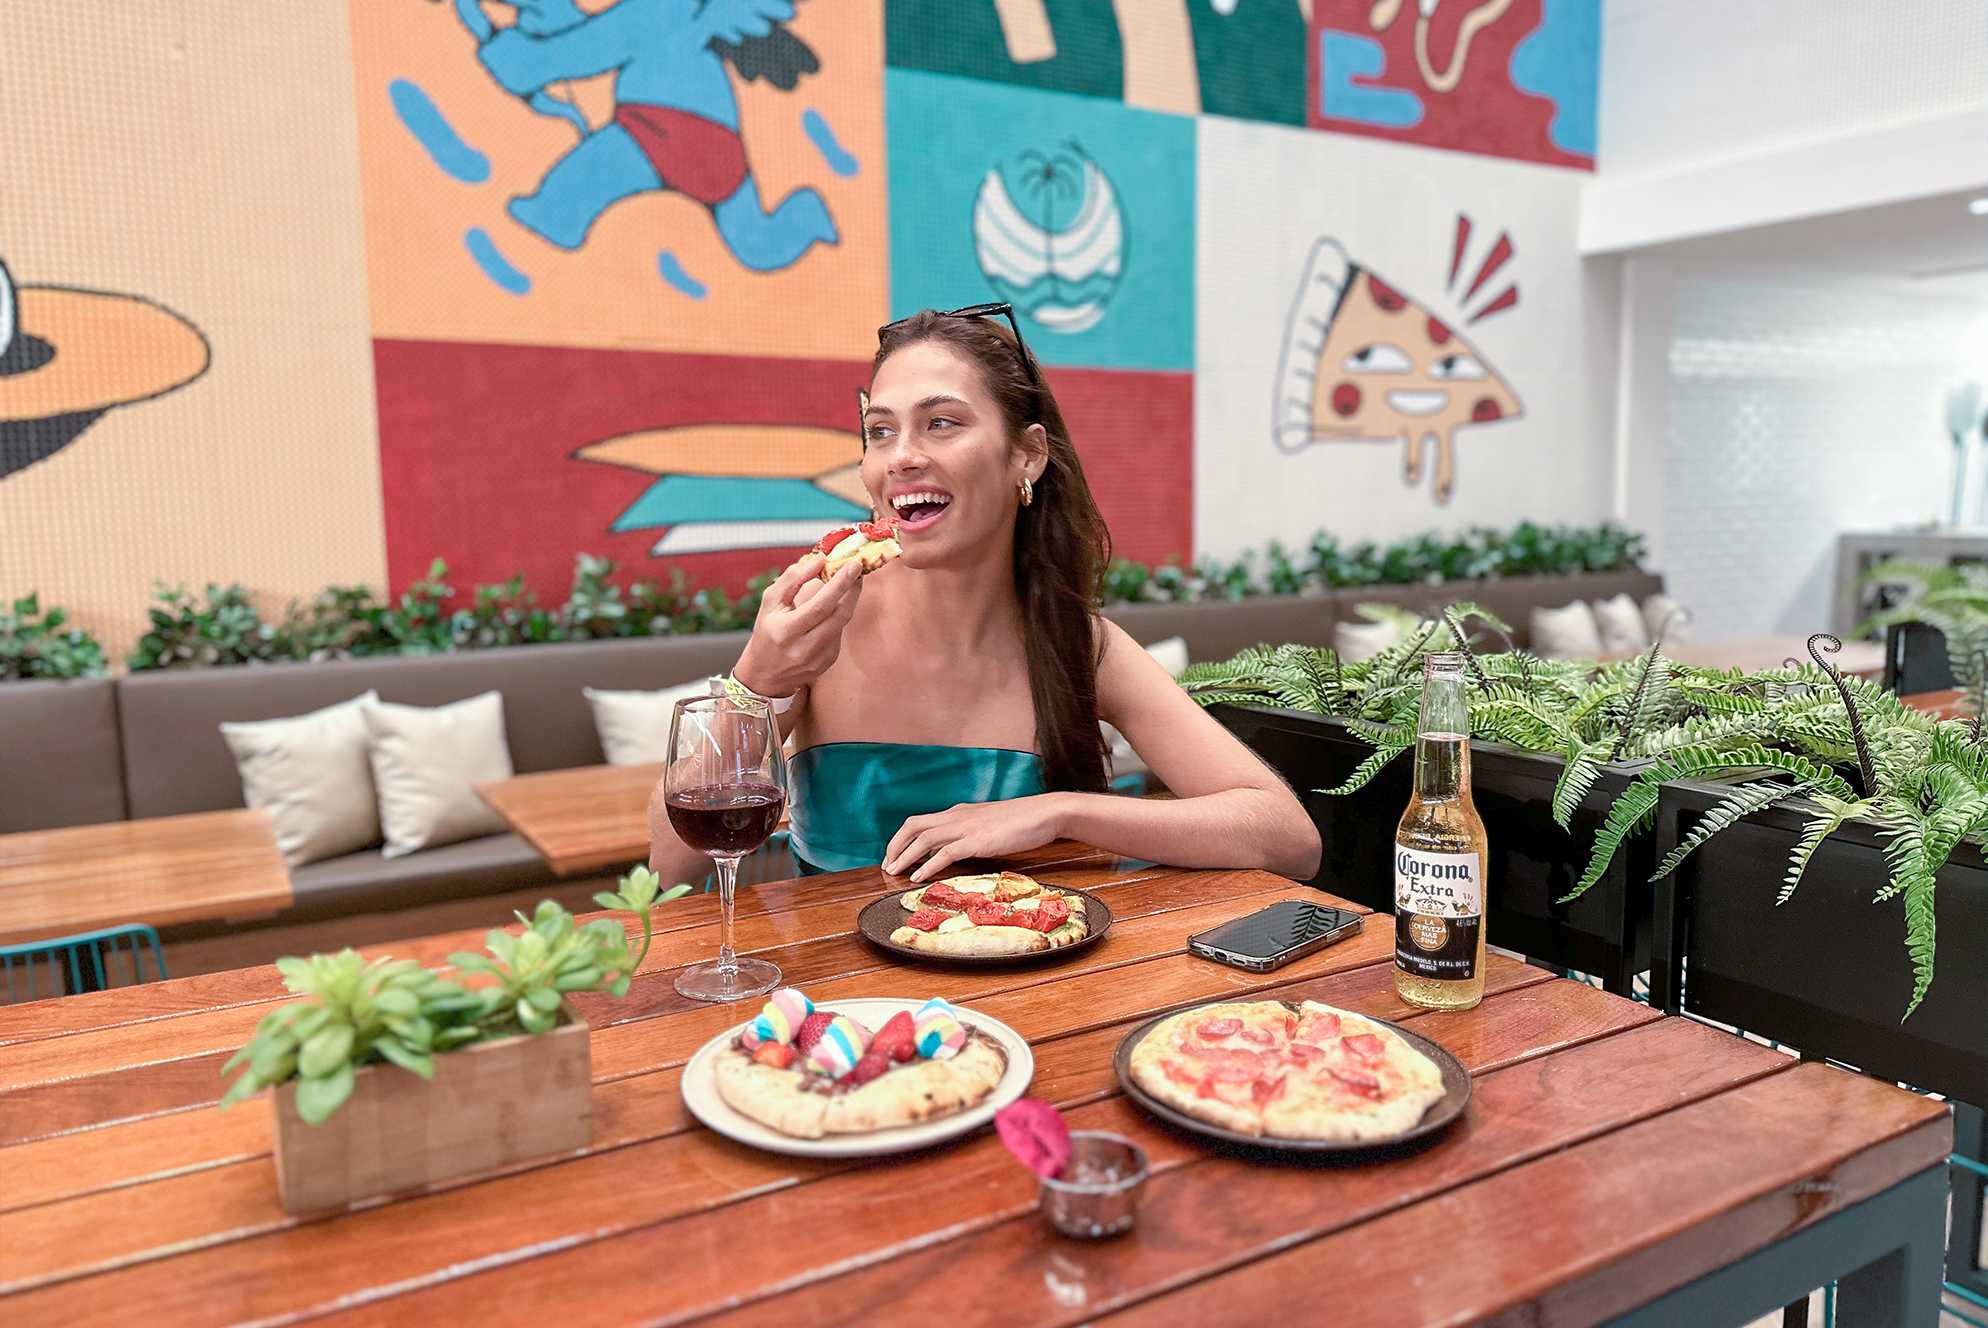 A foto apresenta uma mulher sorridente sentada à mesa em um restaurante aconchegante. Ela está saboreando uma fatia de pizza, com uma taça de vinho tinto ao lado e uma garrafa de Corona Extra à sua frente. O ambiente é decorado com murais coloridos ao fundo.